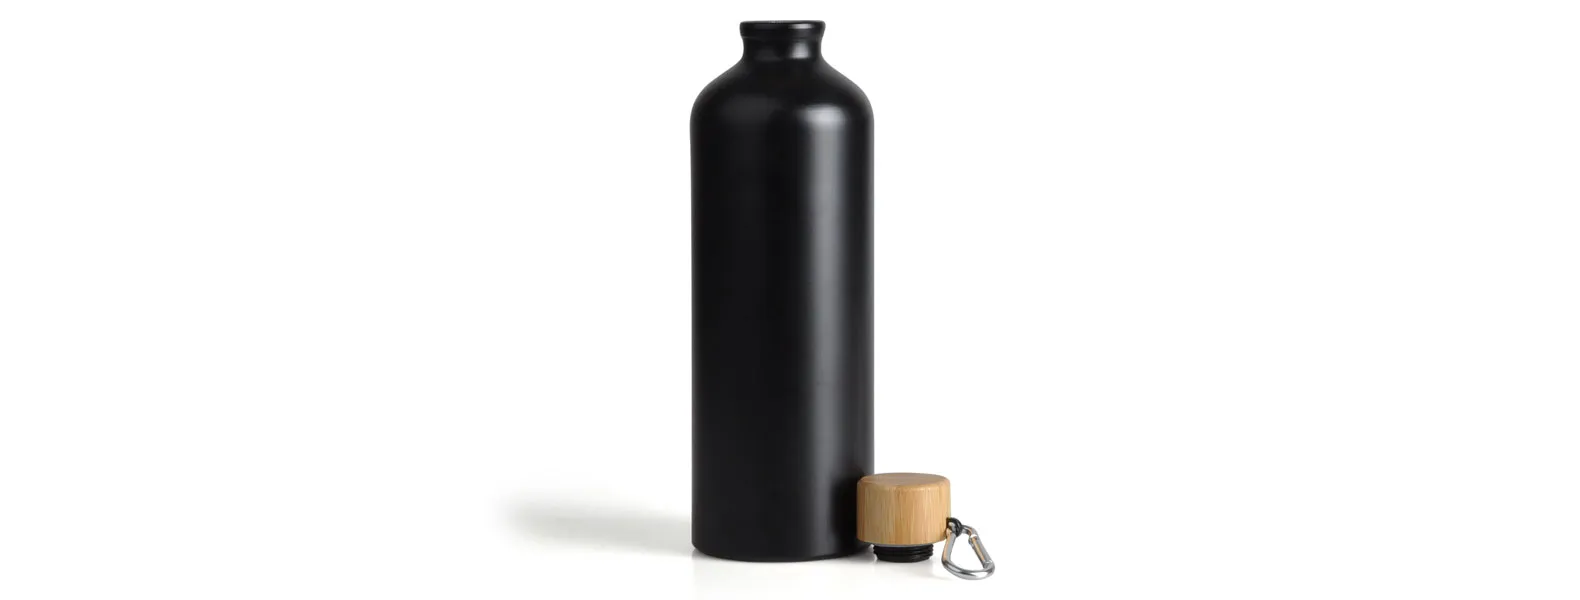 Garrafa em alumínio na cor preta com capacidade de 1 litro. Possui tampa rosqueável em bambu.